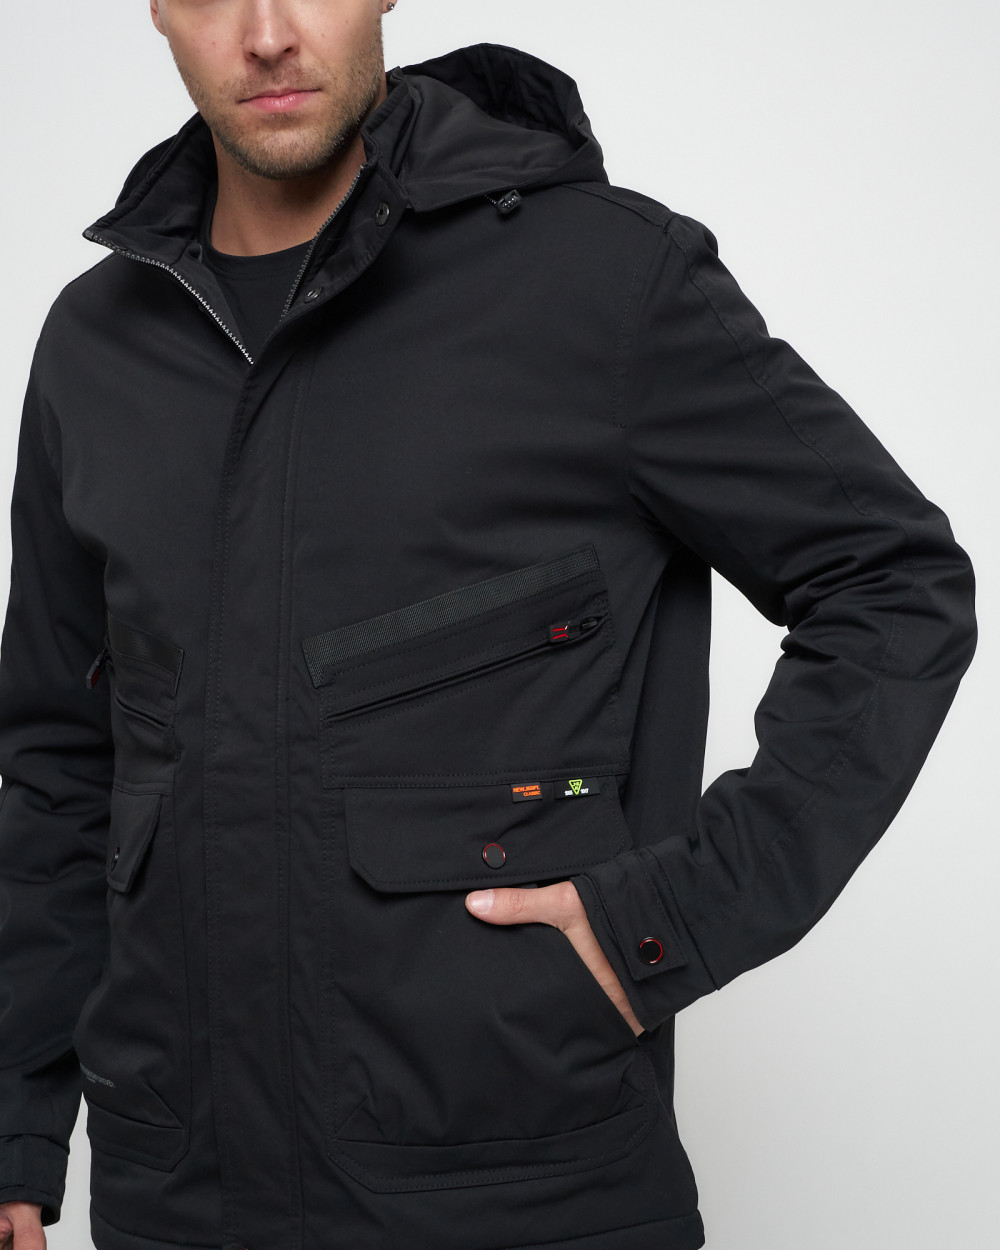 Купить куртку мужскую спортивную весеннюю оптом от производителя недорого в Москве 8596Ch 1